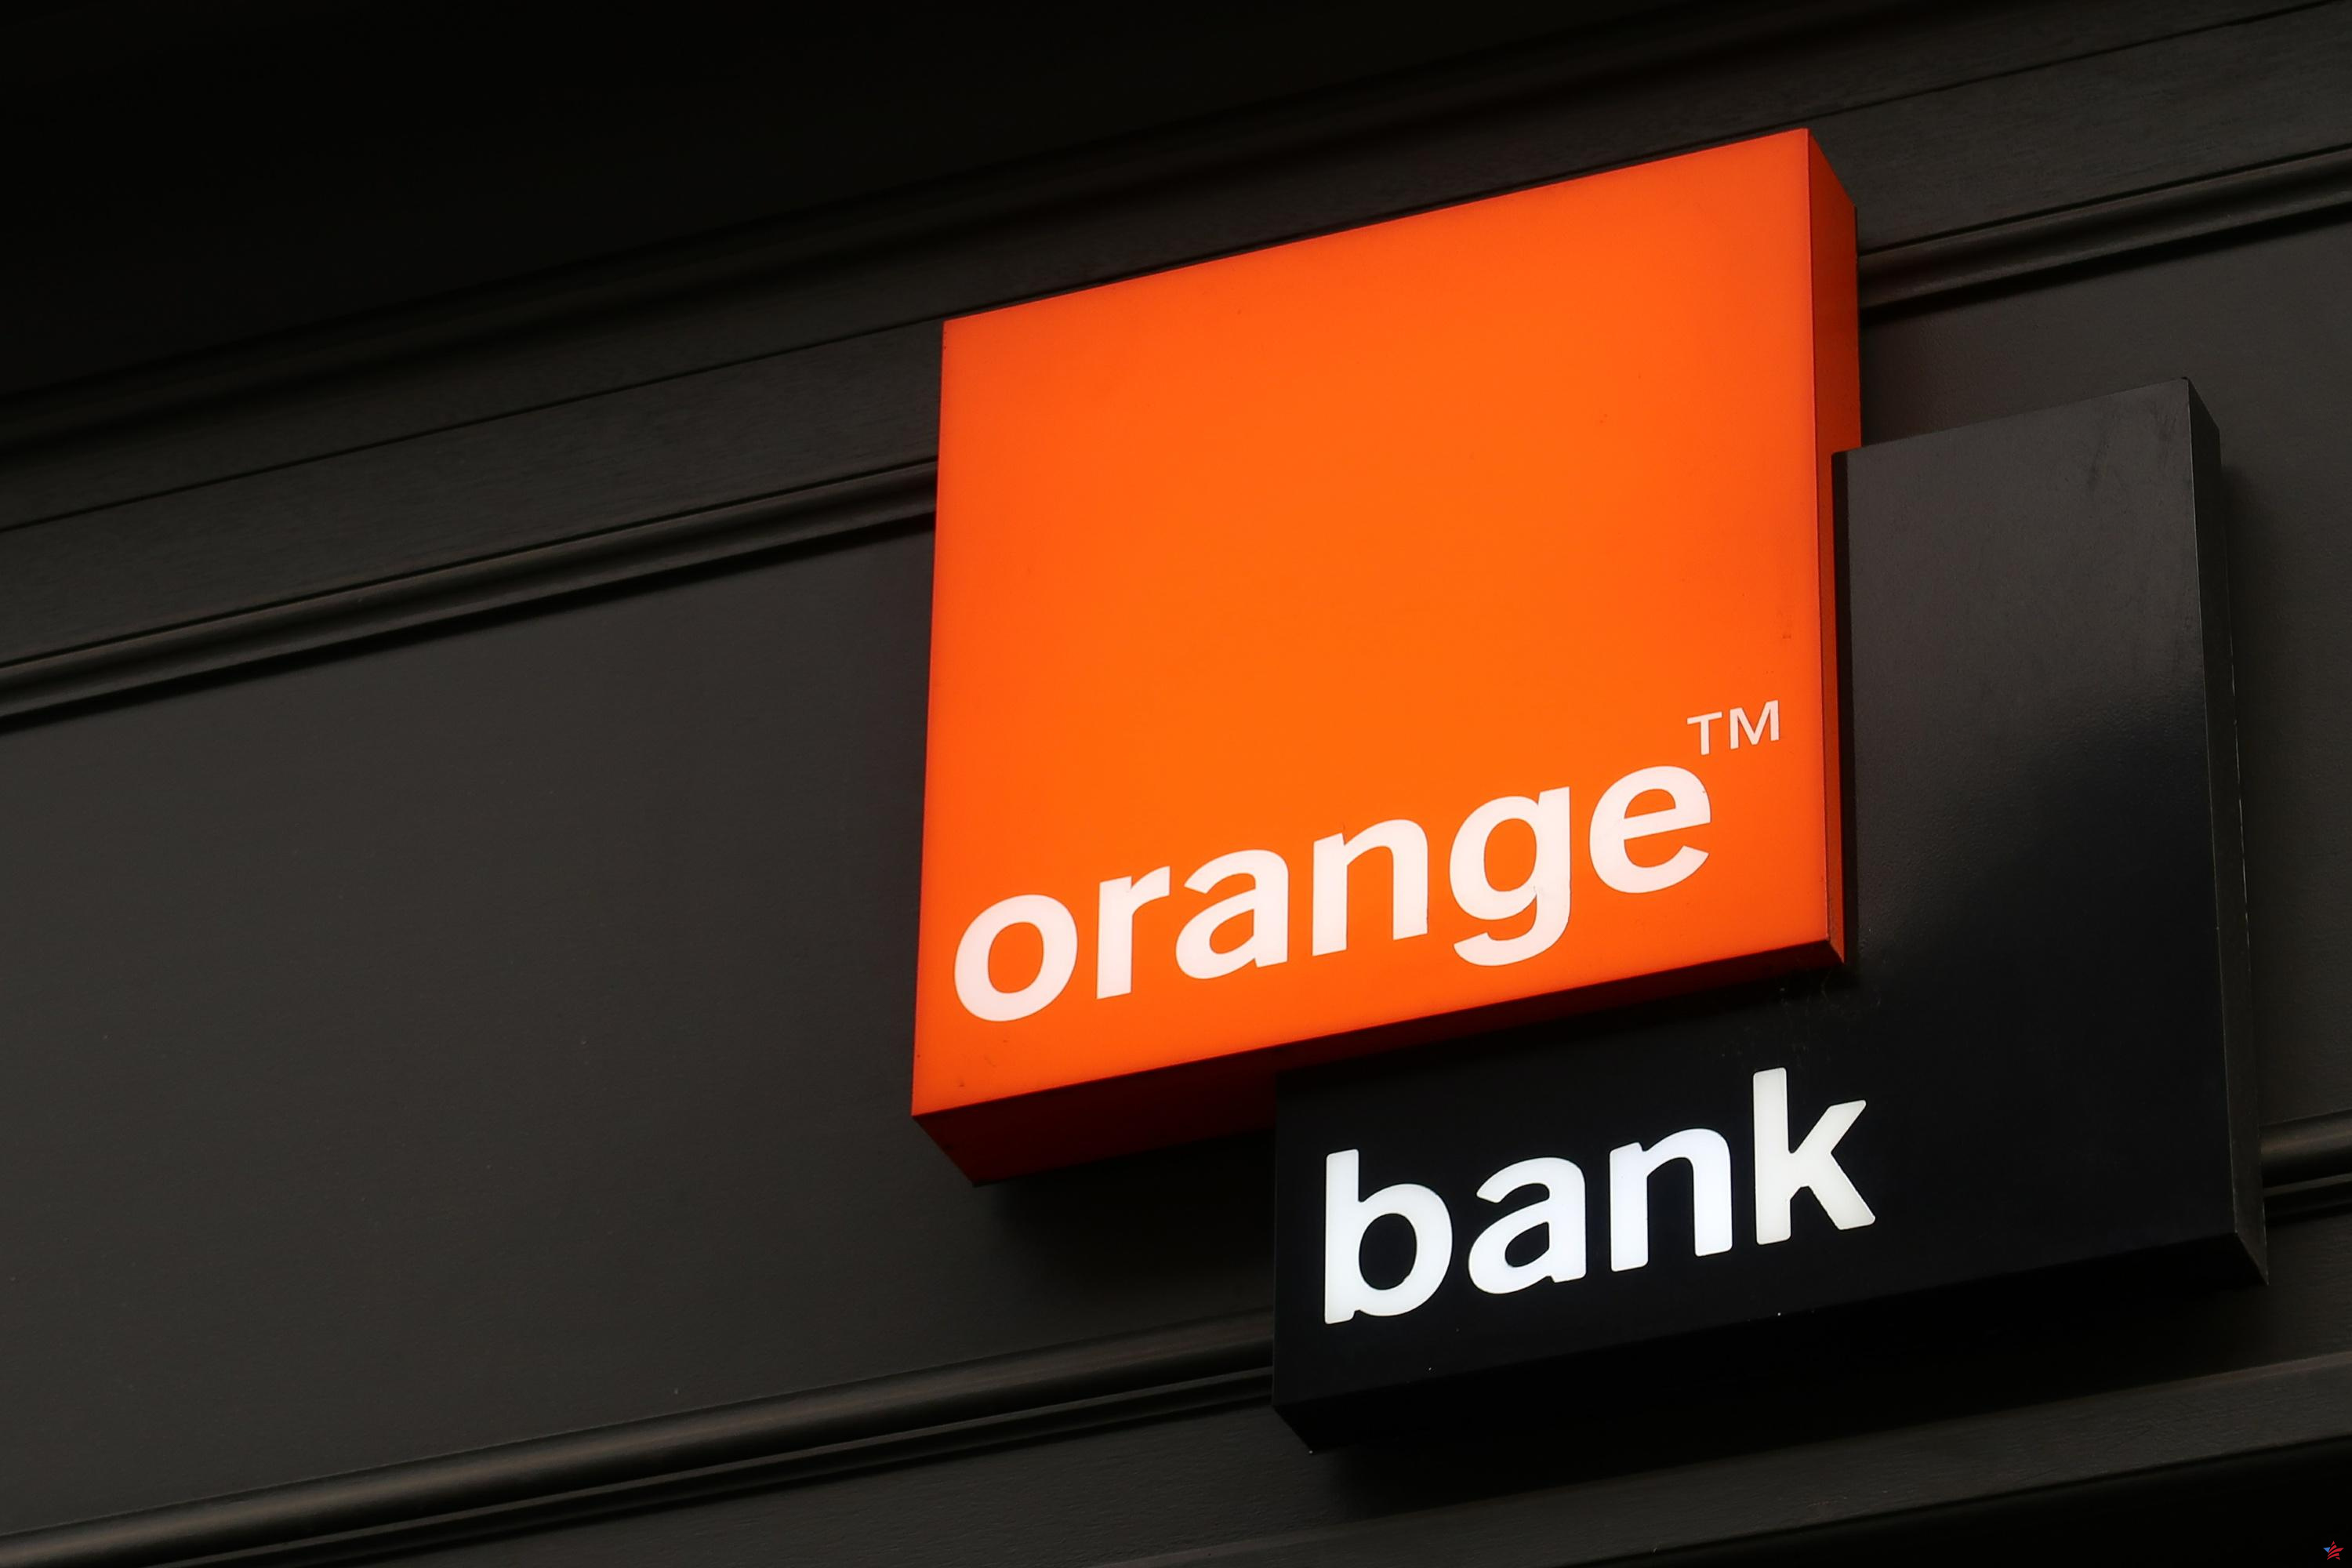 ¿Cómo se realizará la transferencia de clientes de Orange Bank a Hello Bank?